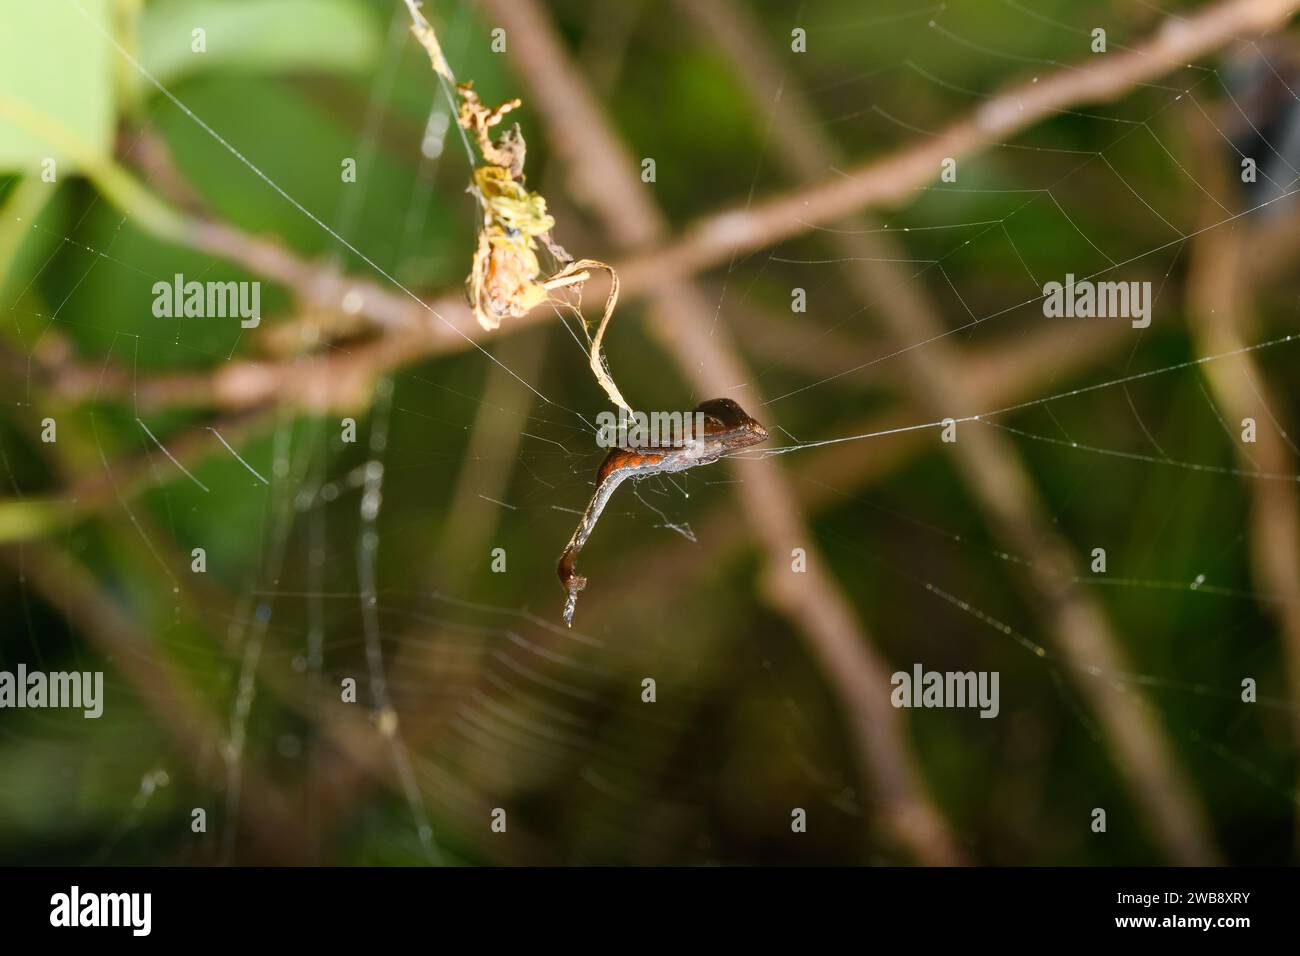 Die faszinierende Form der Arachnura Angura, die auf einem einzigen Strang ihres Netzes steht, demonstriert die einzigartigen Anpassungen von Sataras Spinnenfauna. Stockfoto